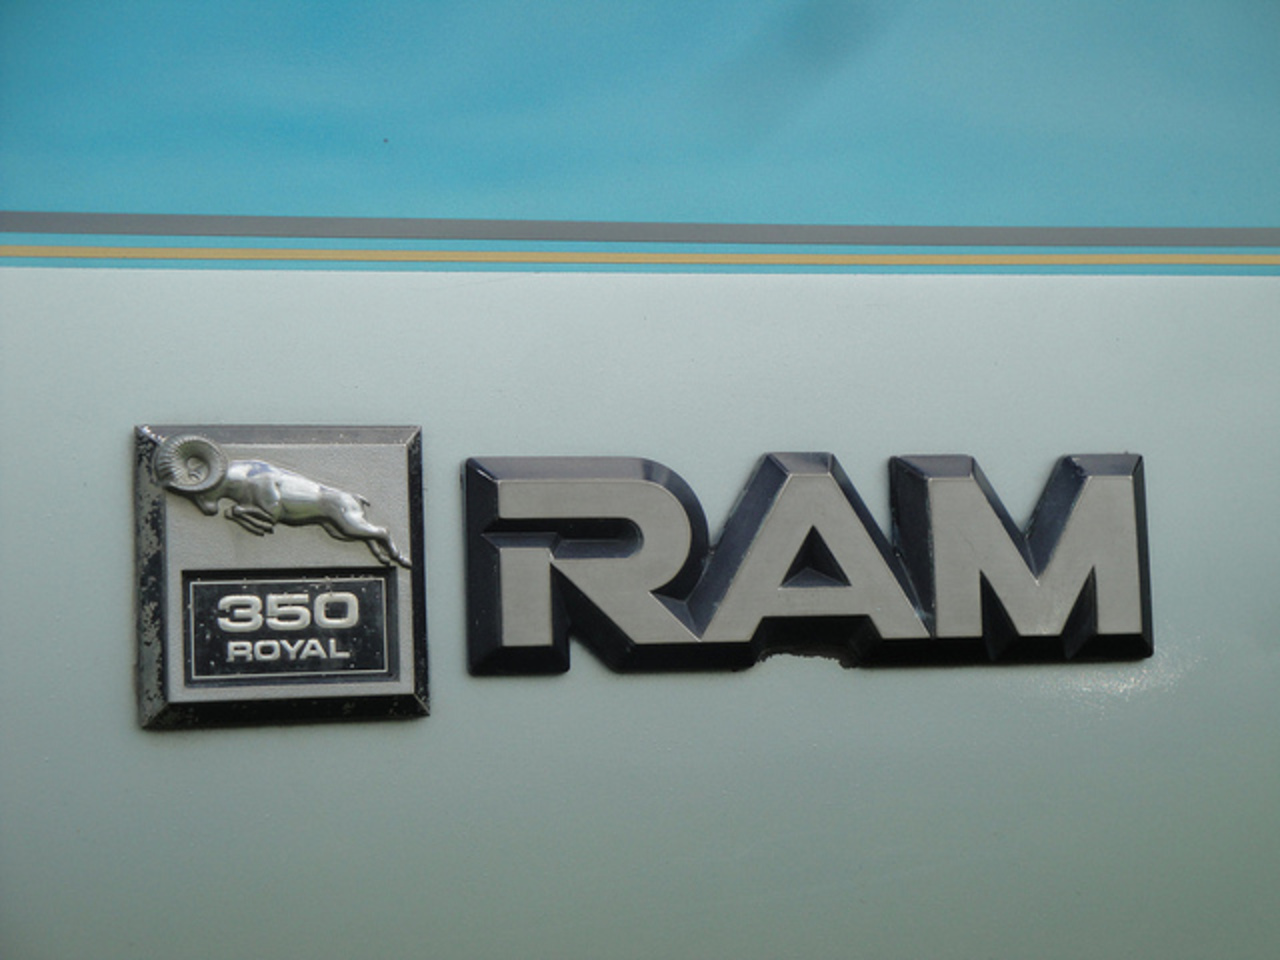 Dodge Ram 350 Royal / Flickr - Partage de photos!